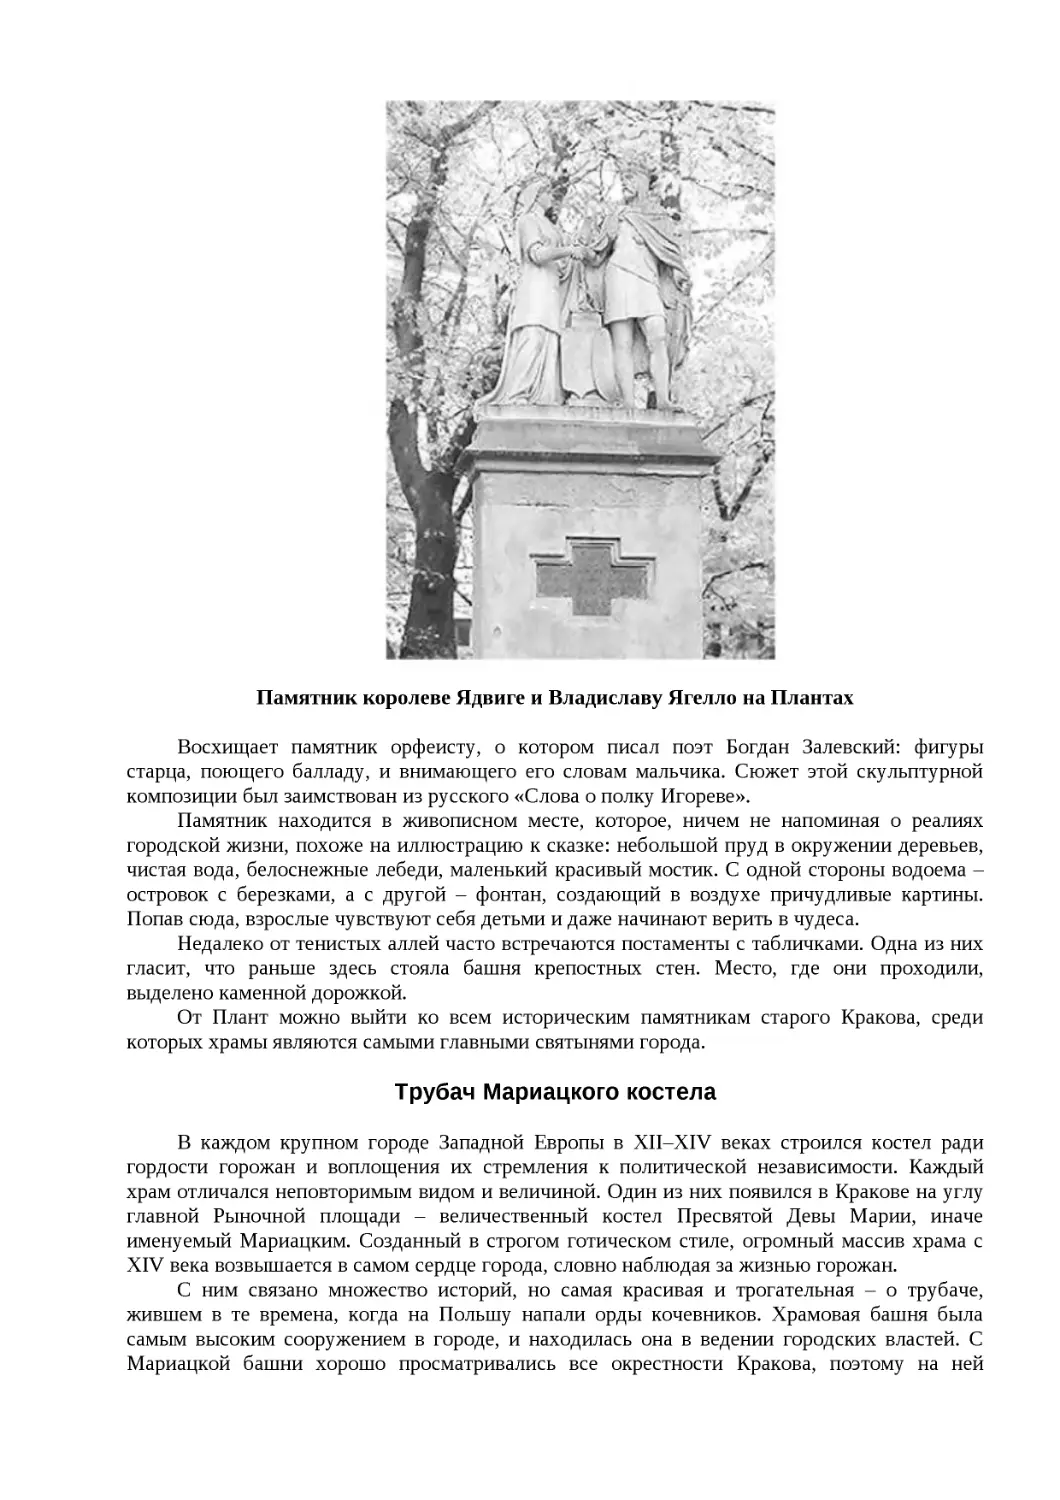 ﻿Памятник королеве Ядвиге и Владиславу Ягелло на Планта
﻿Трубач Мариацкого костел